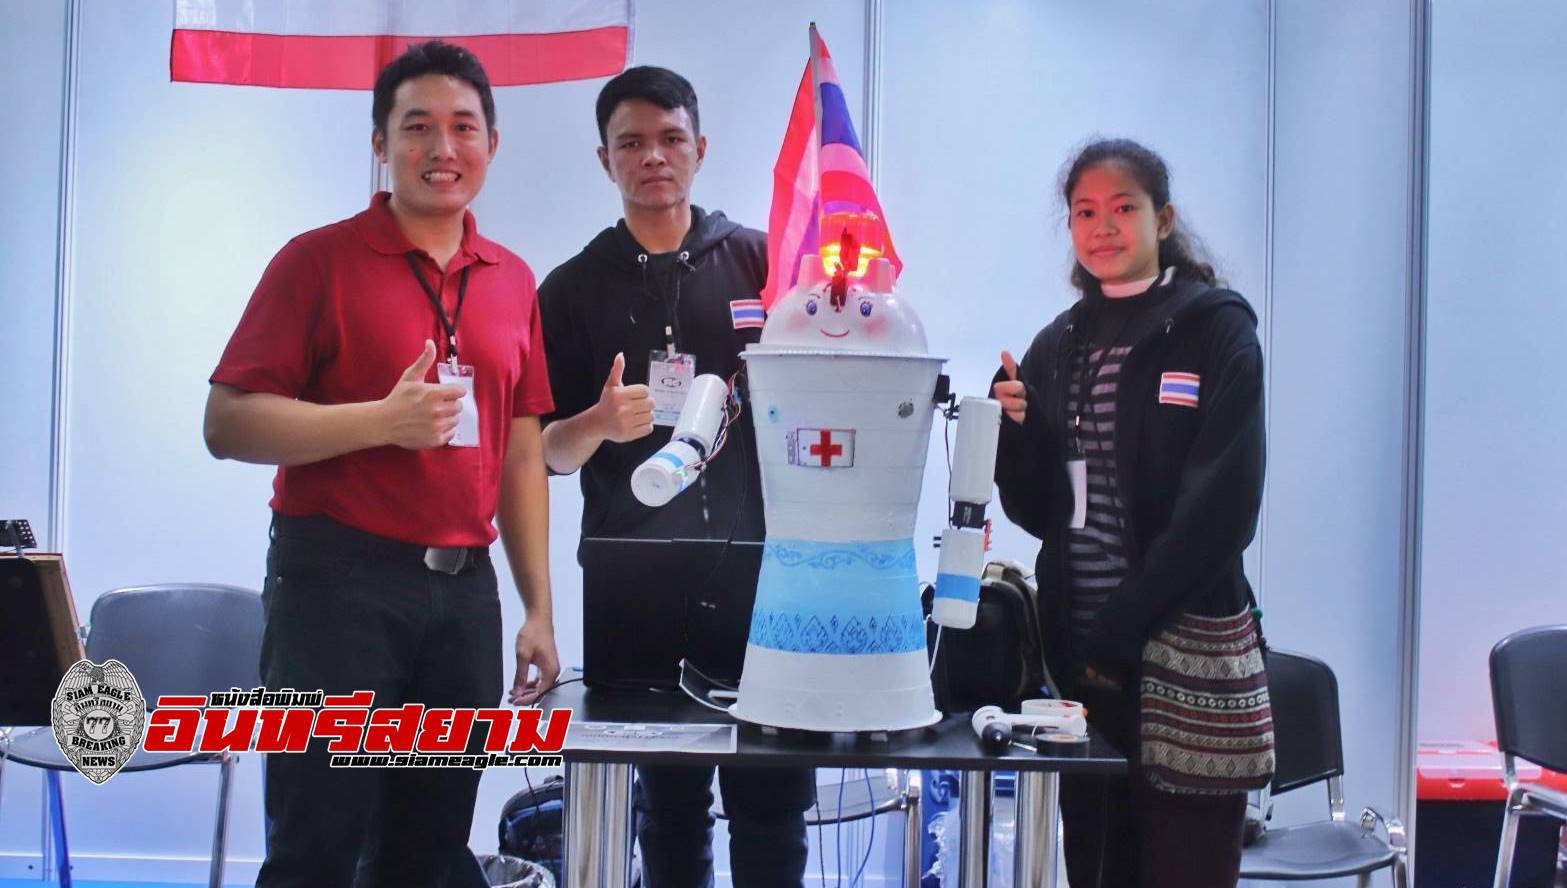 นครสวรรค์-อบจ.ยินดีกับทีม SKJ Robot ที่คว้า 2 รางวัล การแข่งขันหุ่นยนต์นานาชาติ